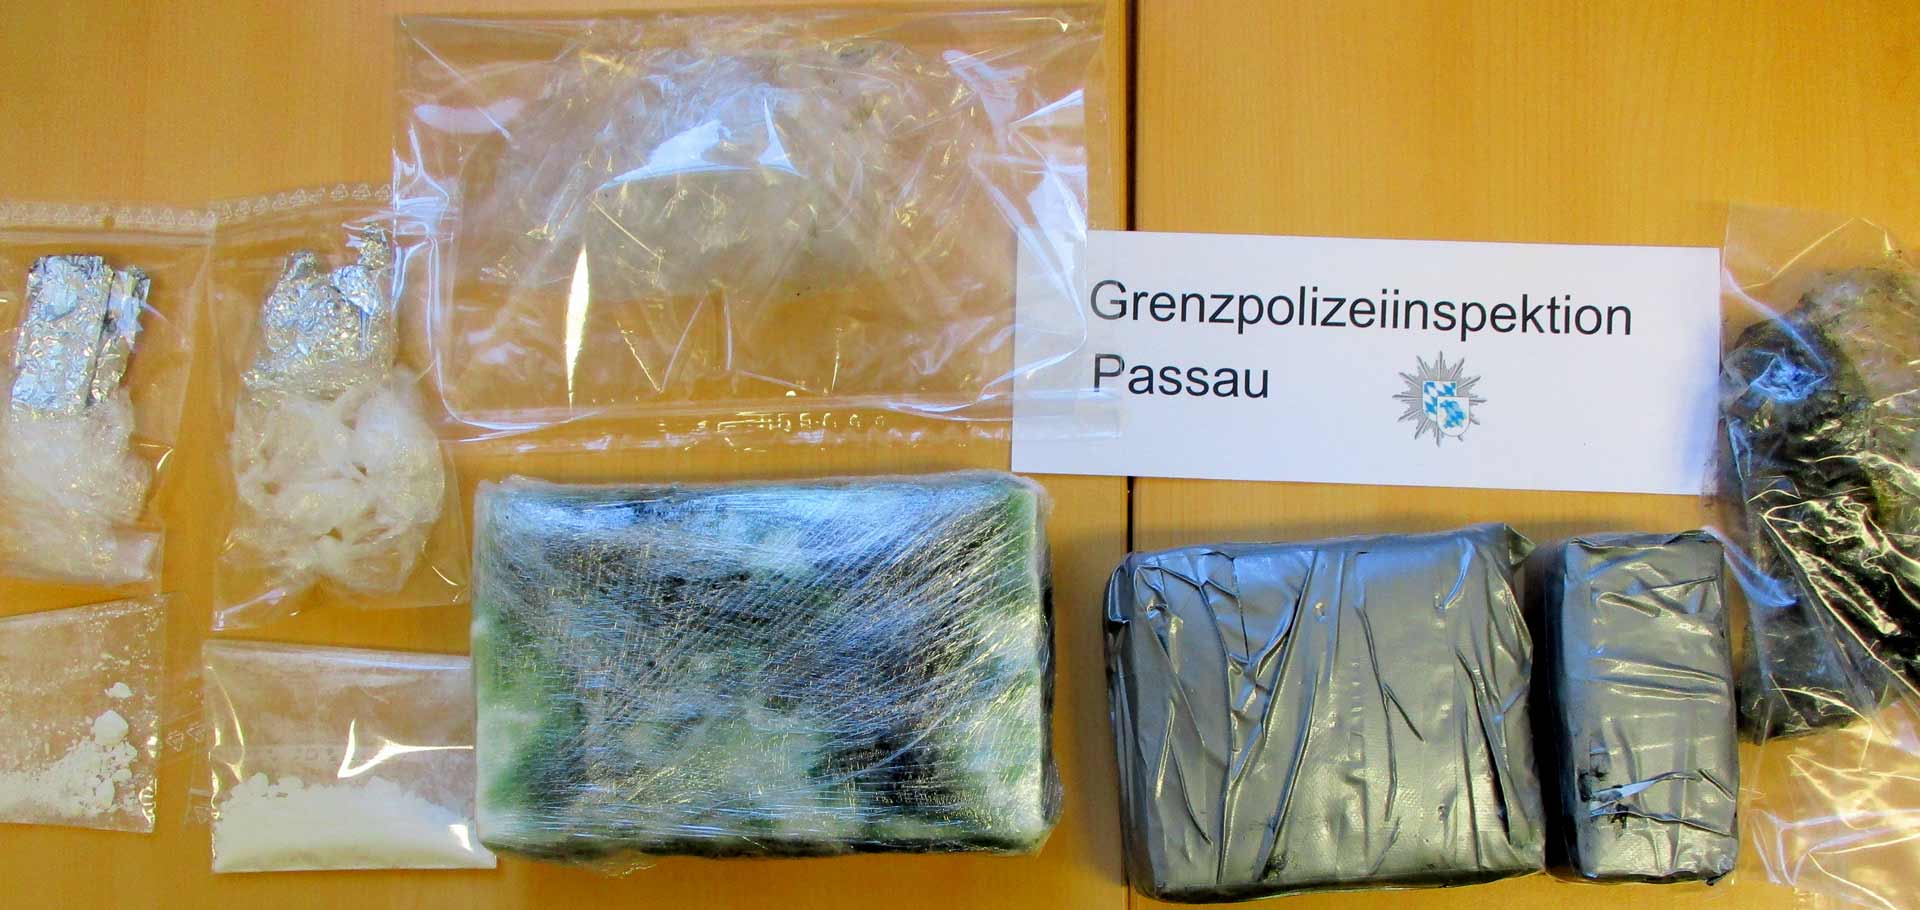 Die sichergestellten Drogen (Foto: Grenzpolizeiinspektion Passau)